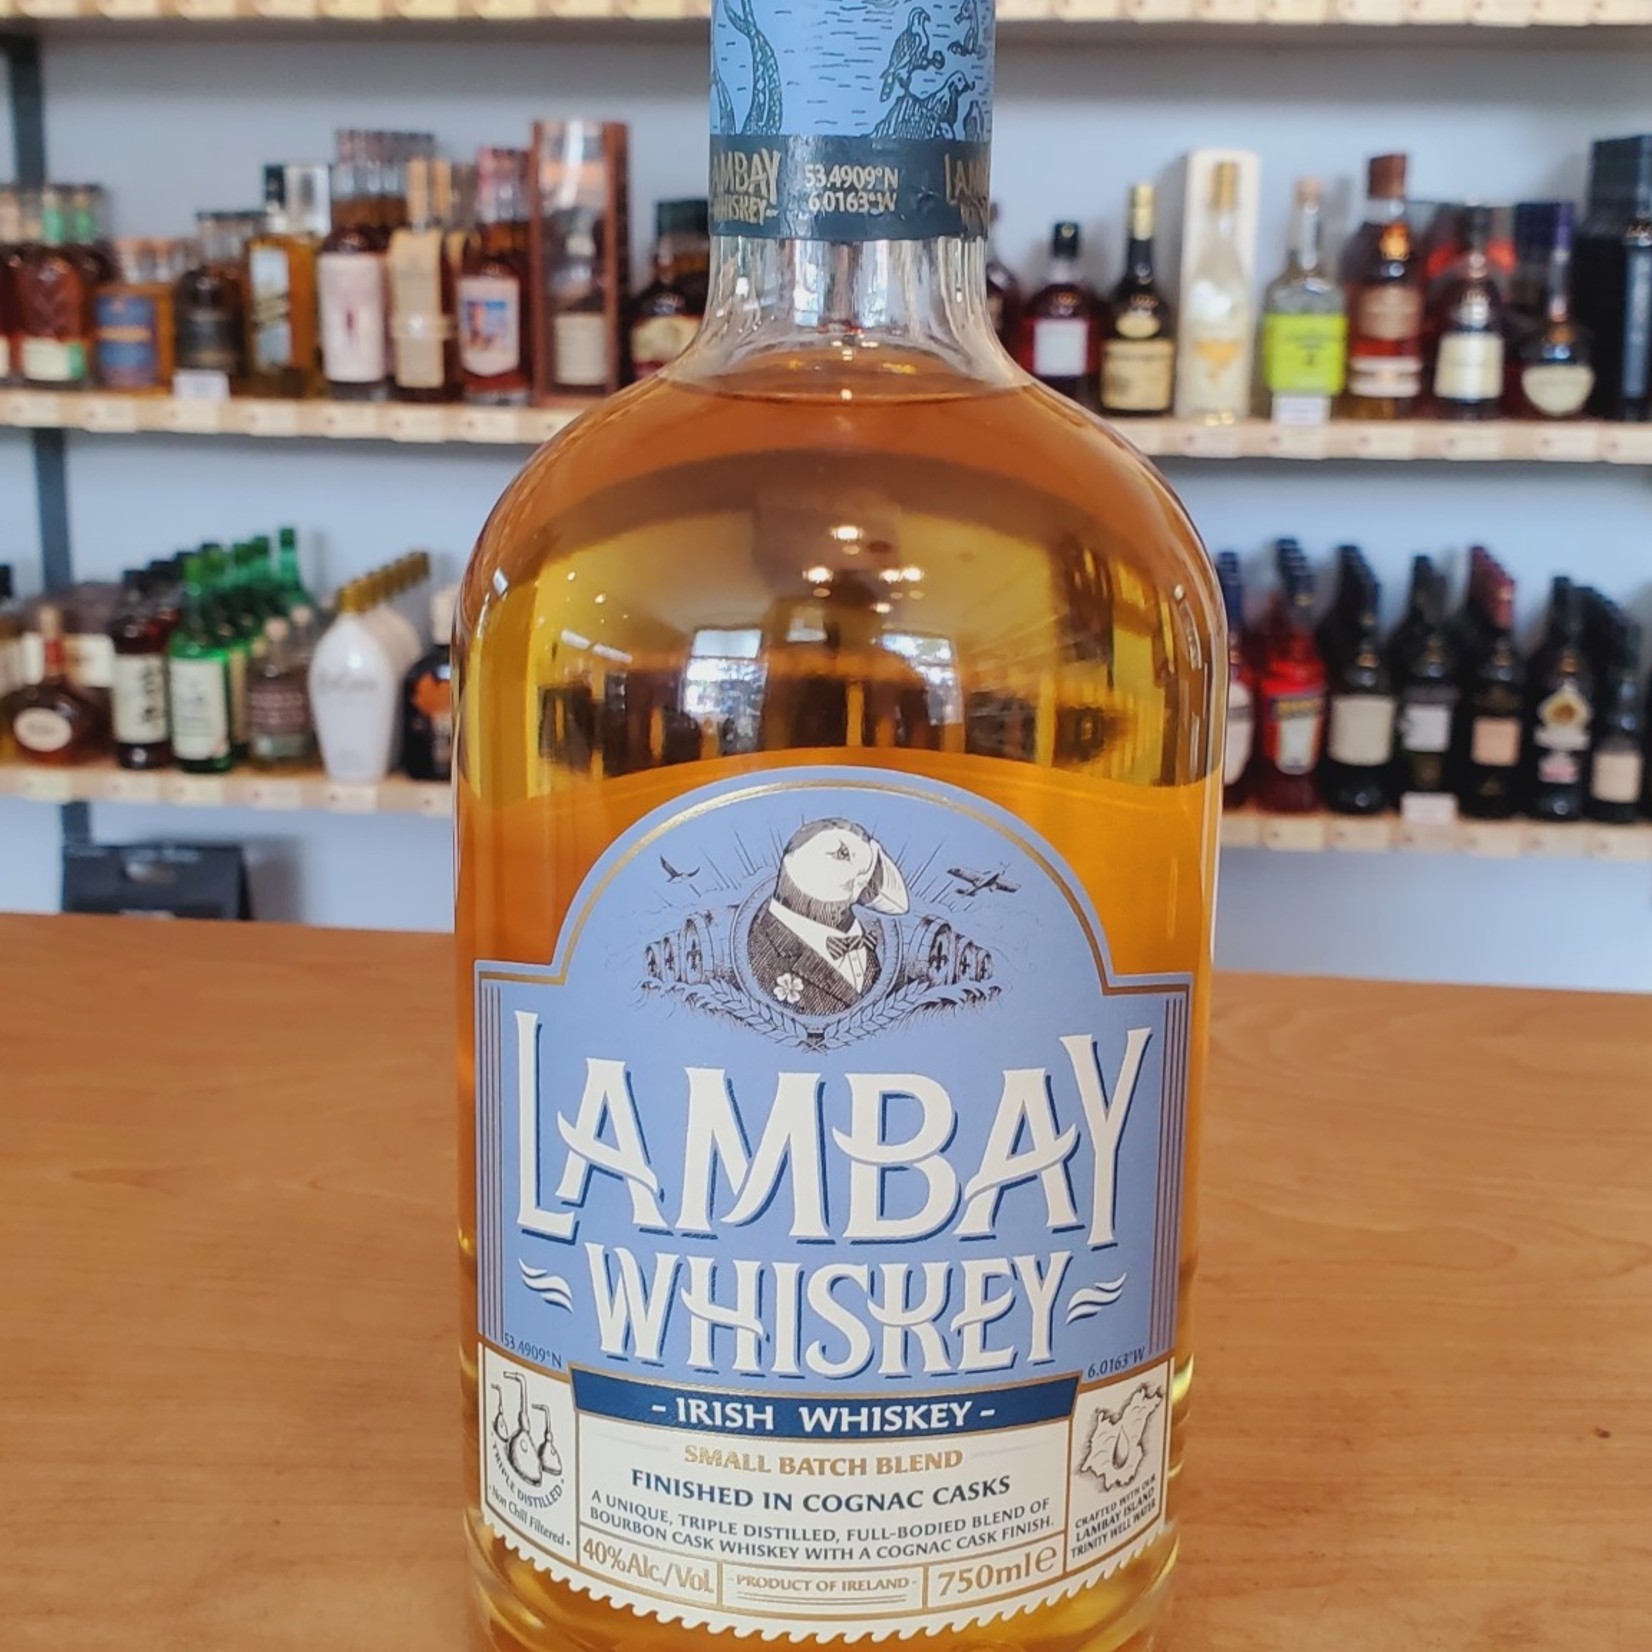 Lambay Lambay, Small Batch Blend Irish Whiskey 750ml 40.0%